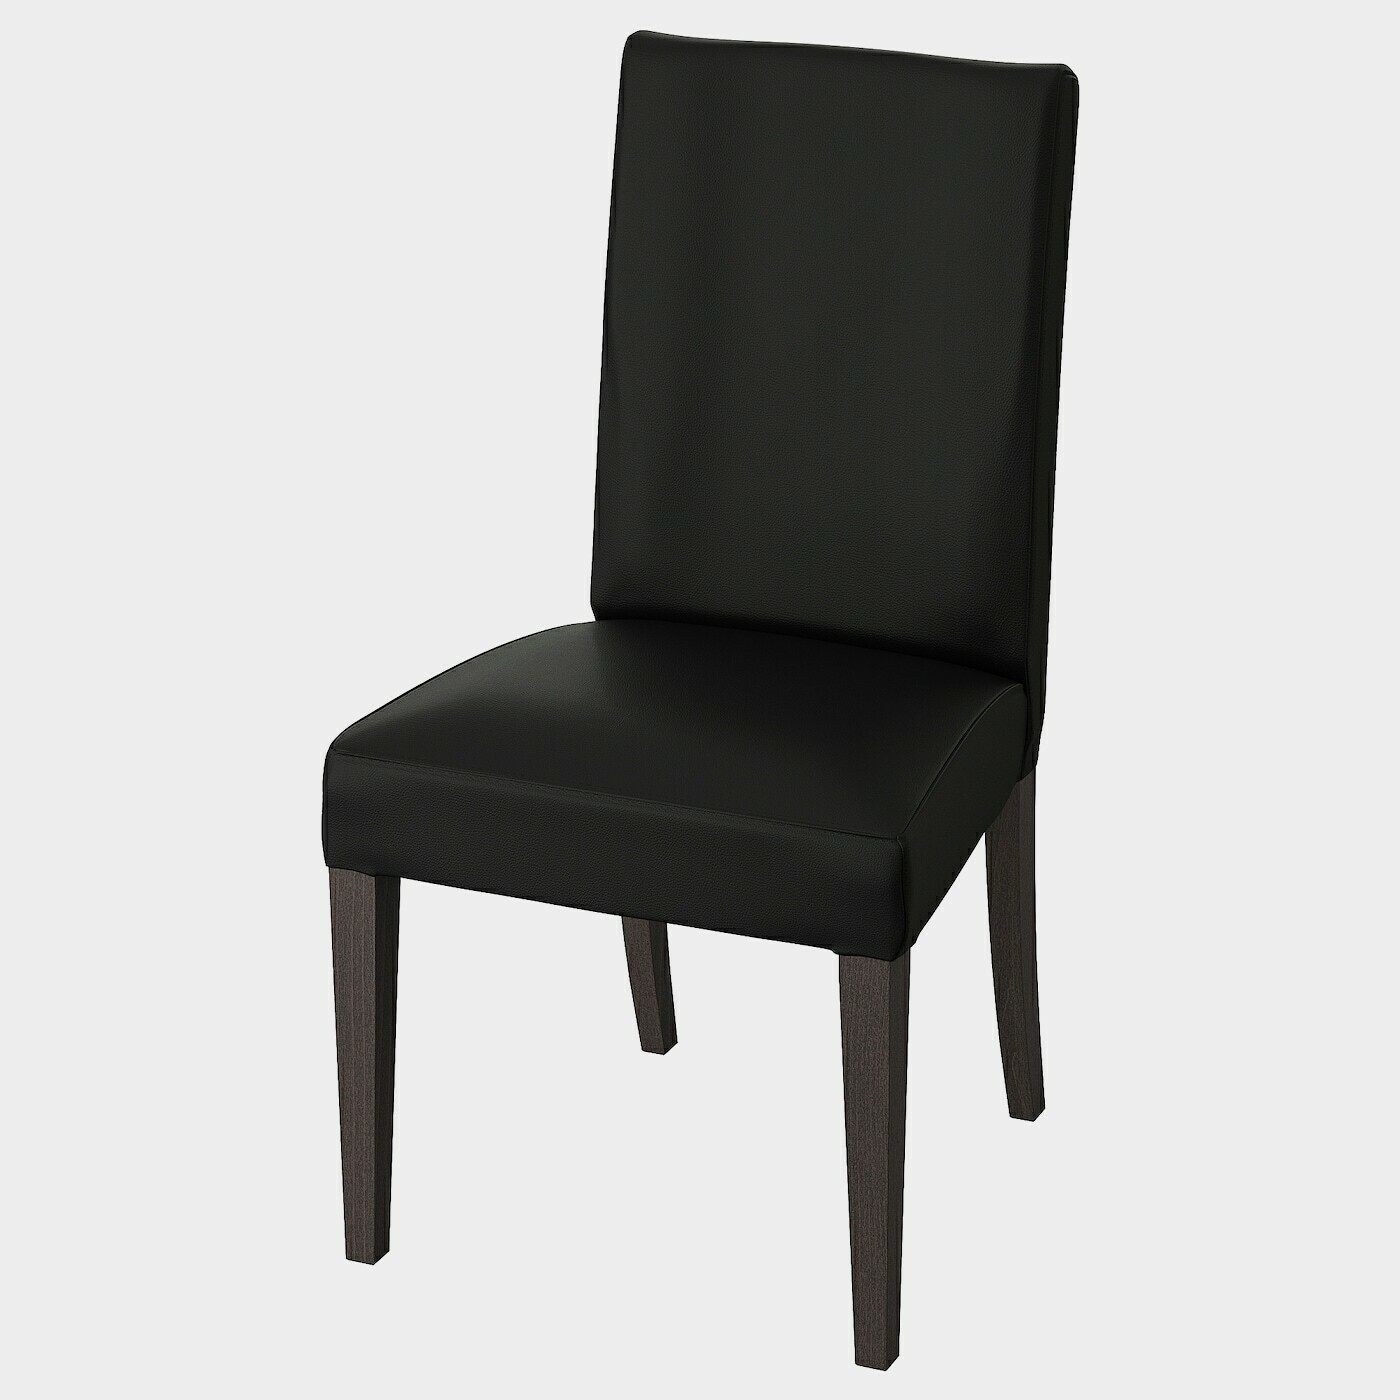 HENRIKSDAL Stuhl  - Esszimmerstühle - Möbel Ideen für dein Zuhause von Home Trends. Möbel Trends von Social Media Influencer für dein Skandi Zuhause.